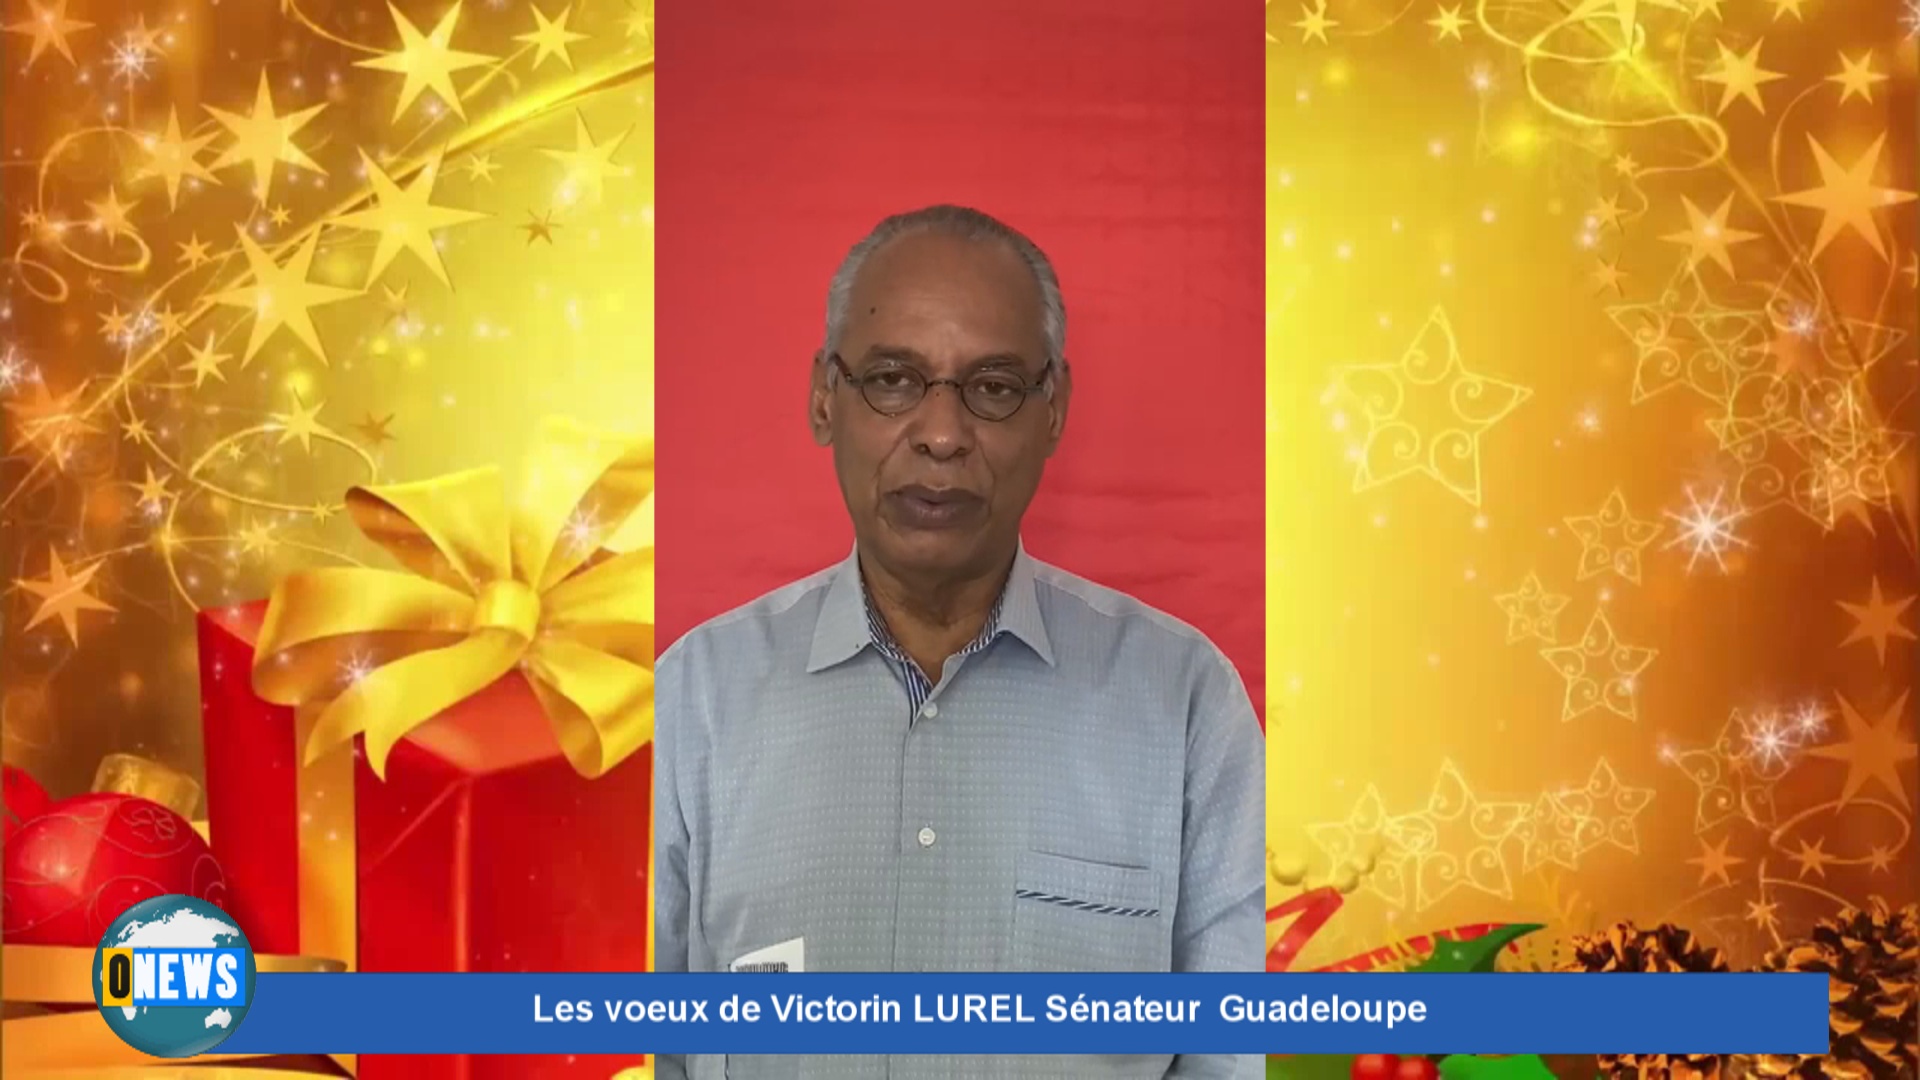 [Vidéo] Onews. Les voeux de Victorin LUREL Sénateur Guadeloupe